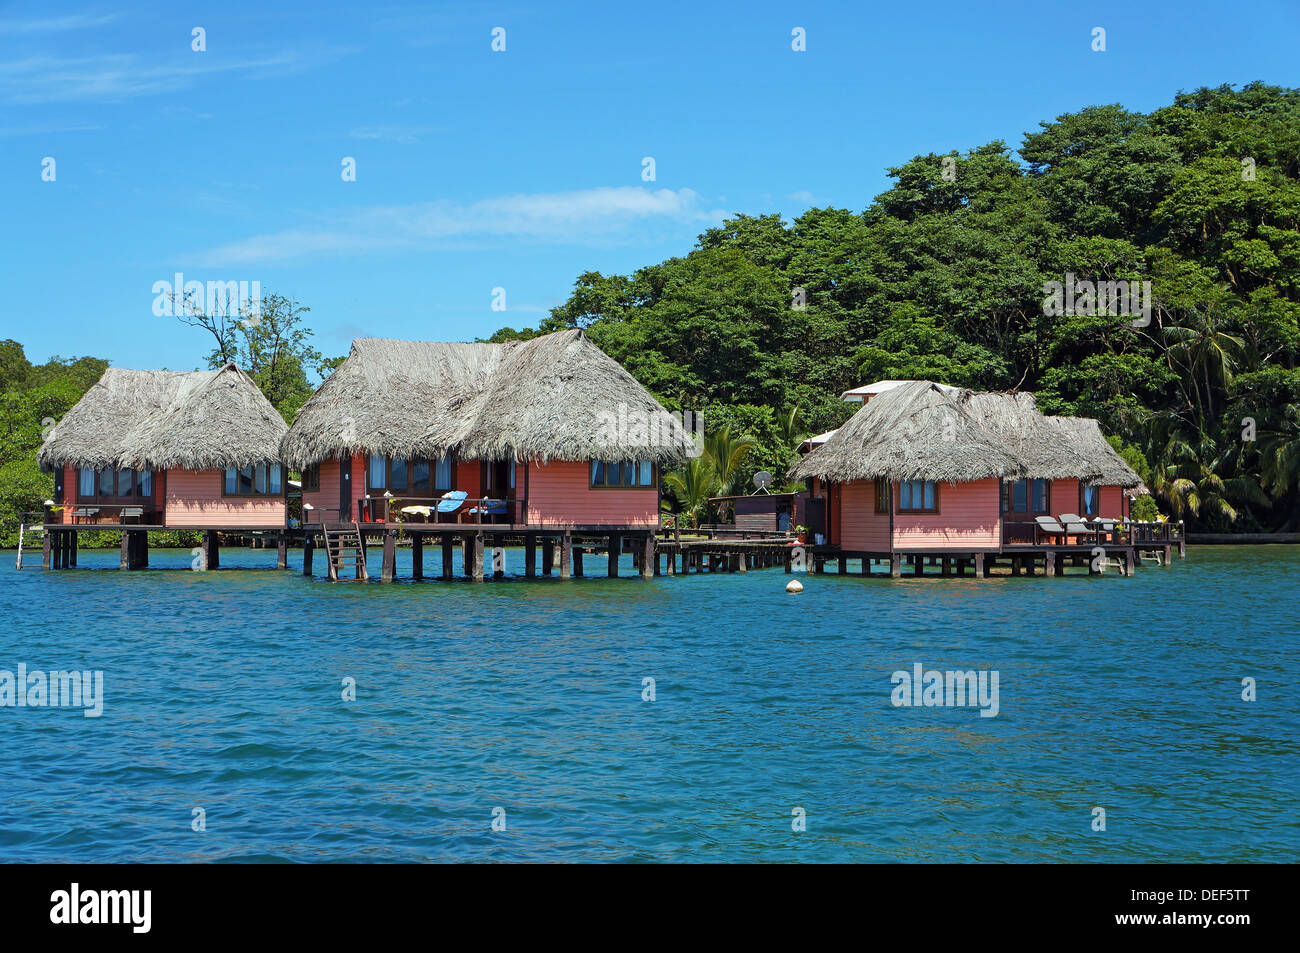 Eco Resort avec cabines de chaume au-dessus de la mer sur l'île tropicale de Bastimentos, mer des Caraïbes, Bocas del Toro, PANAMA Banque D'Images